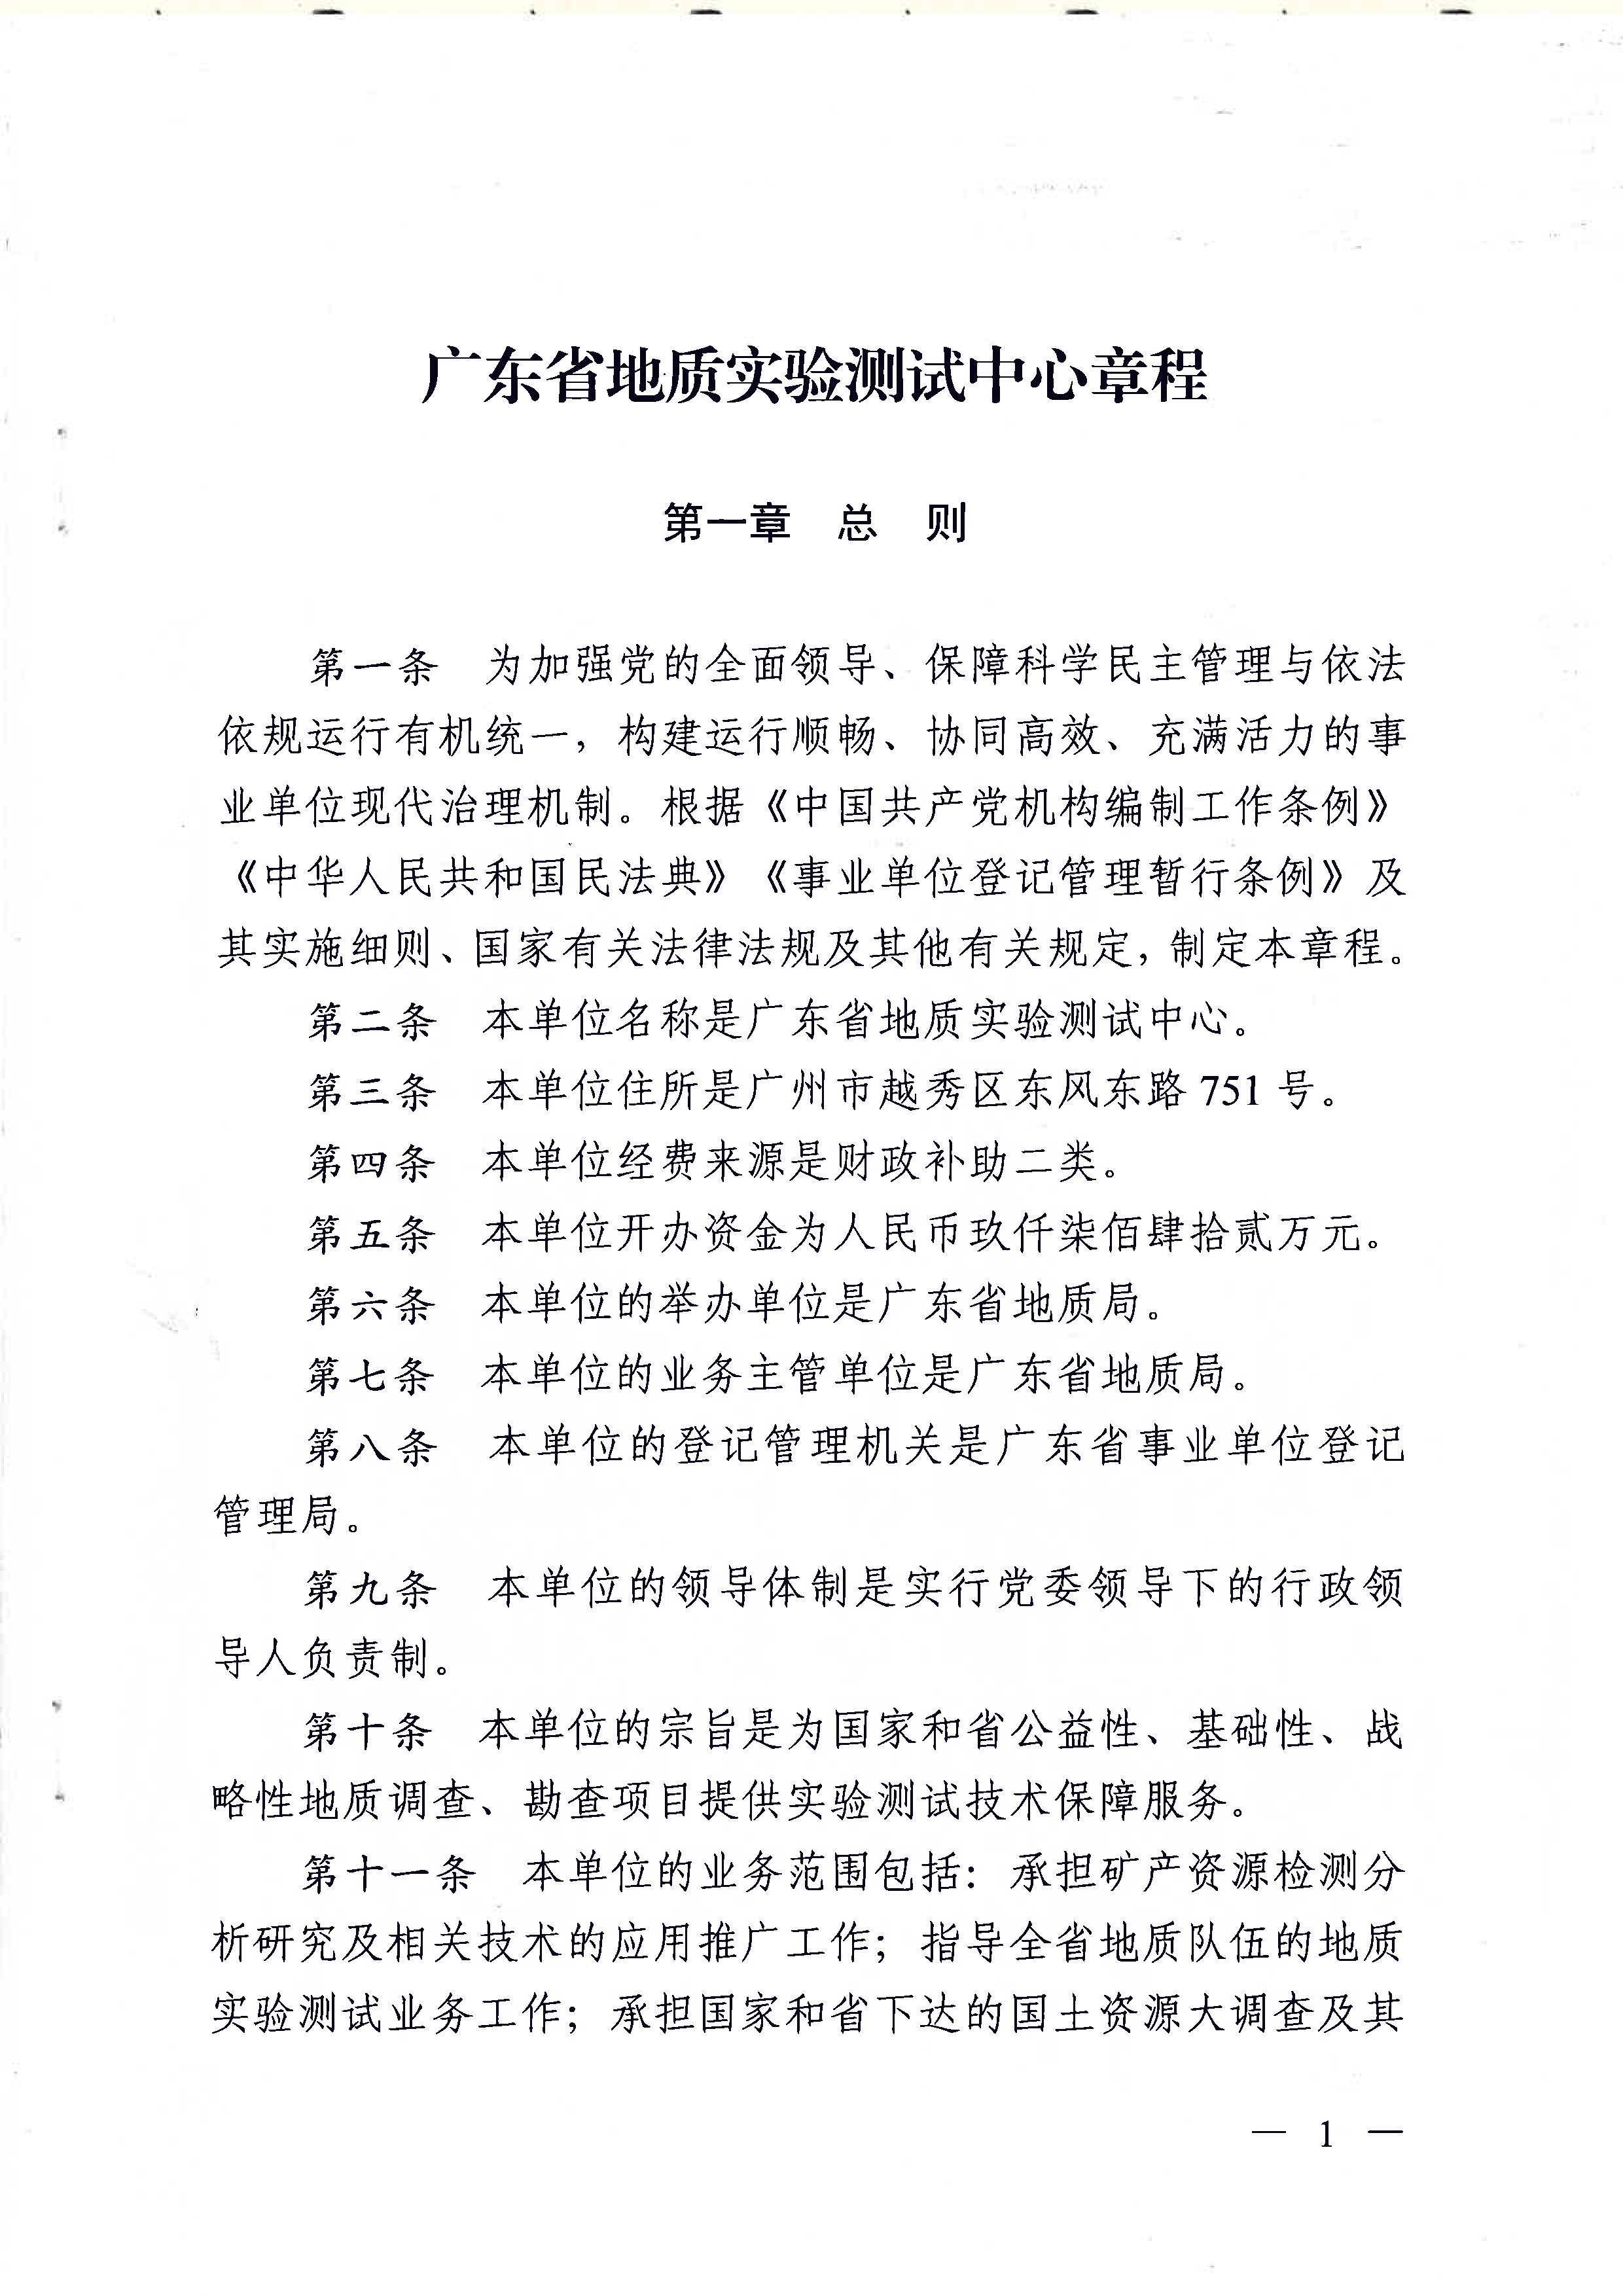 广东省地质实验测试中心事业单位章程 - 0001.jpg